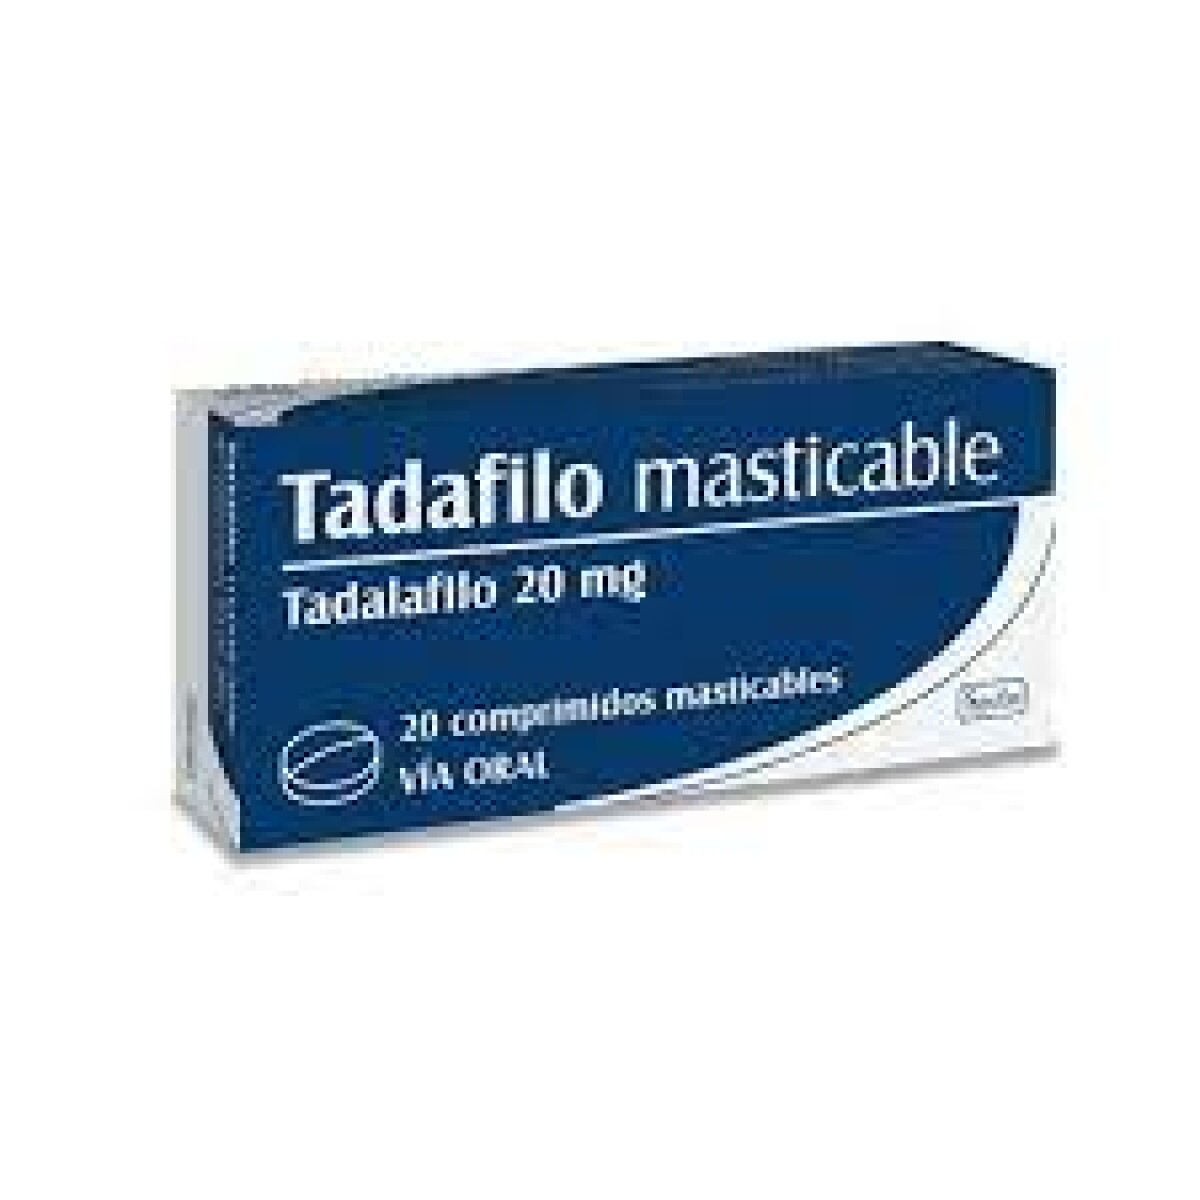 TADAFILO 20 X20 COMPRIMIDOS MASTICABLES 